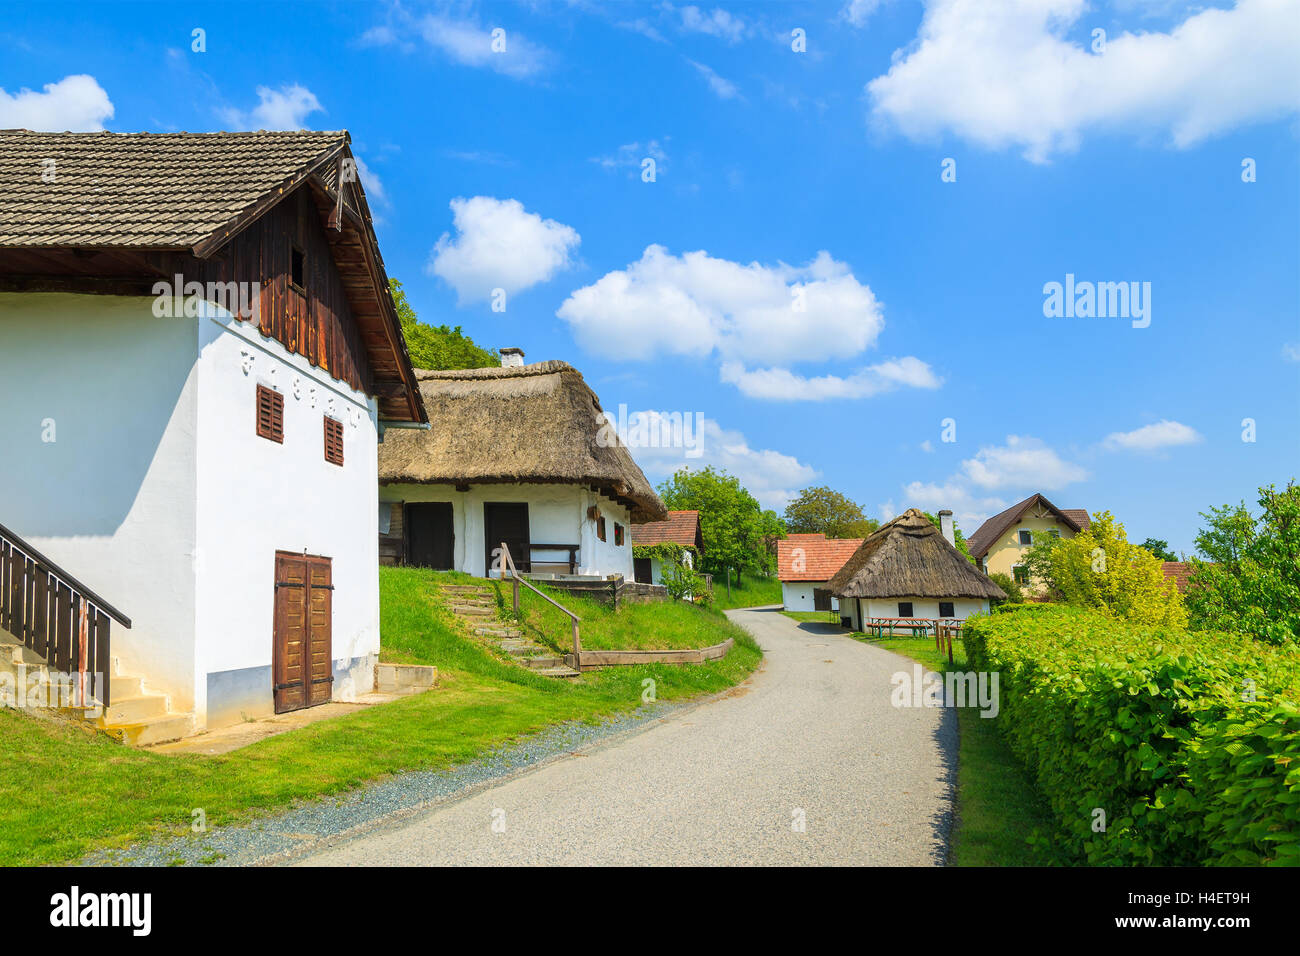 Idyllische Straße in einem Dorf mit traditionellen Cottage-Häusern, Weinherstellung Region Burgenland, Österreich Stockfoto